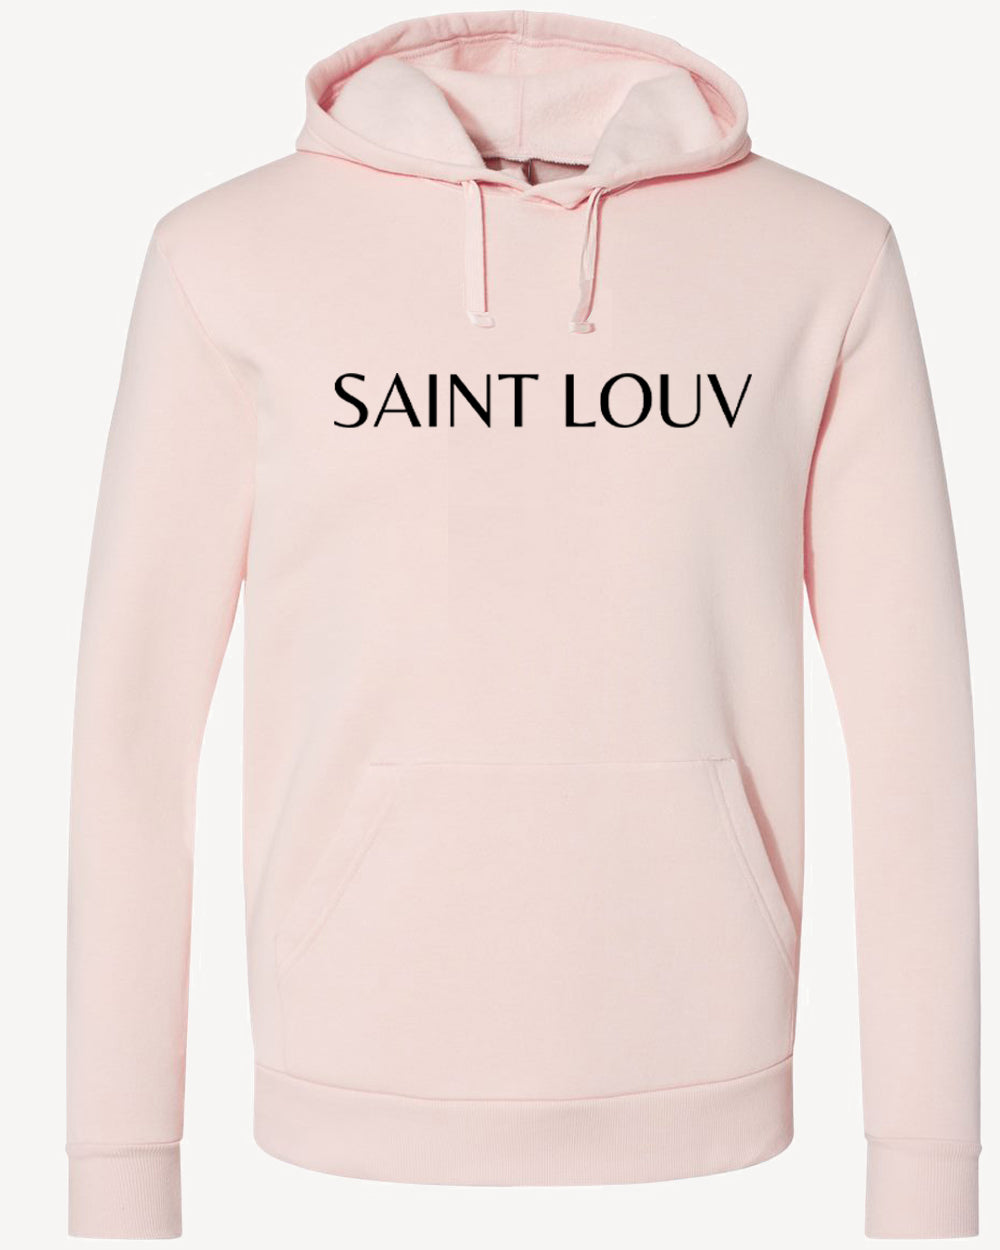 Saint Louv Pink Hoodie